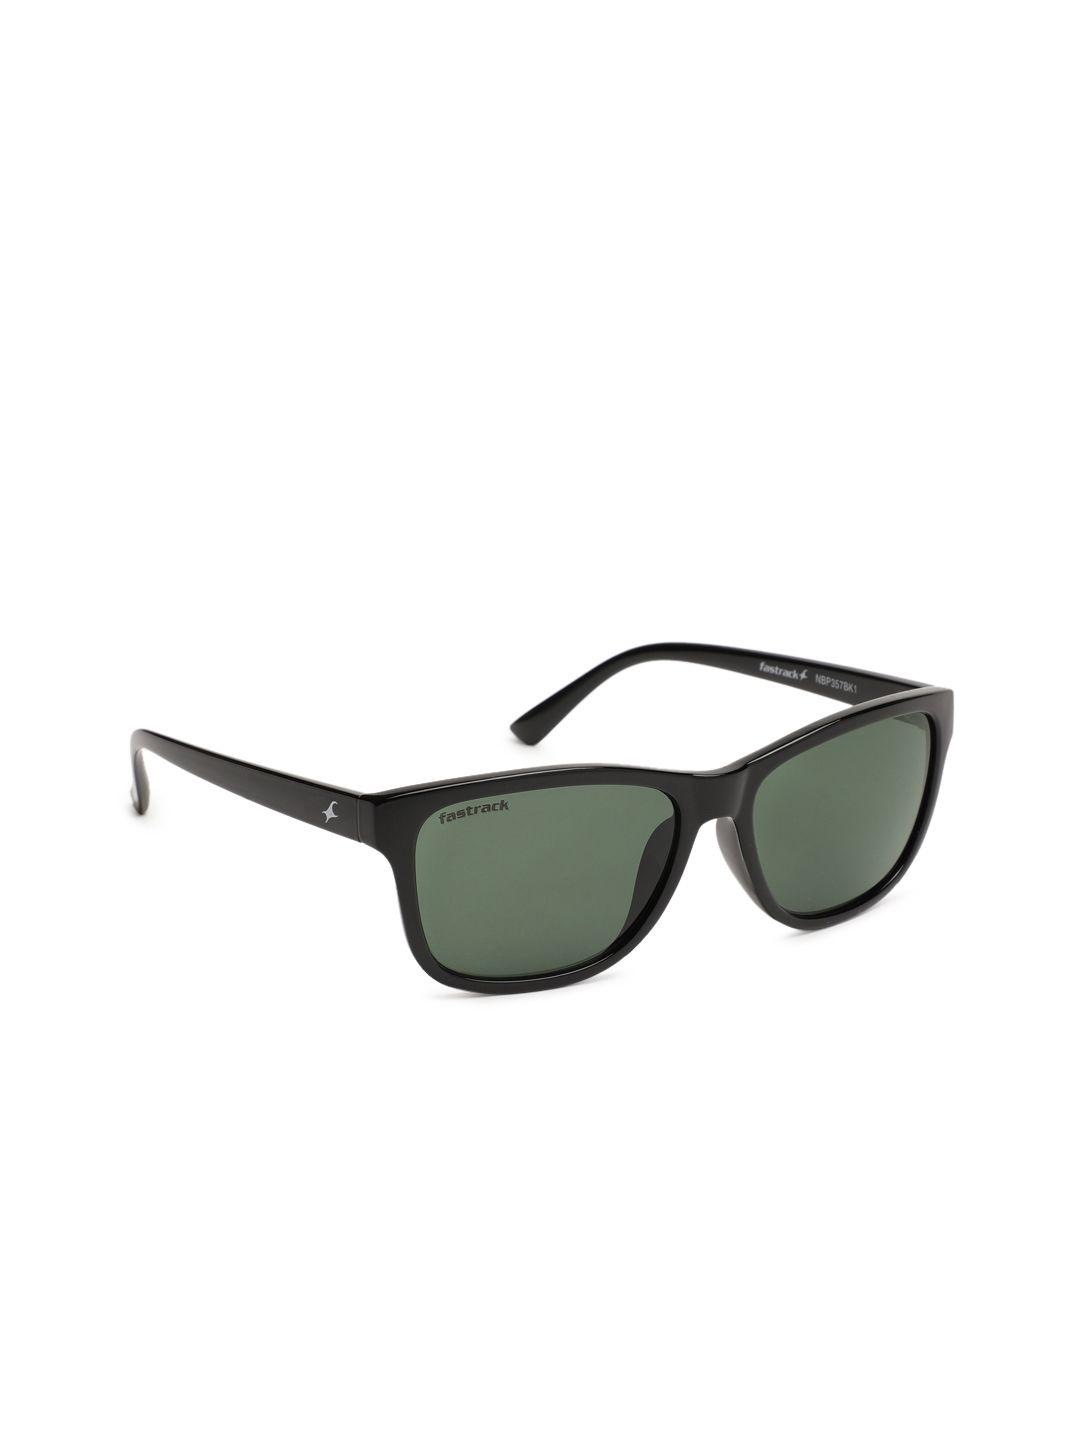 fastrack-men-wayfarer-sunglasses-nbp357bk1